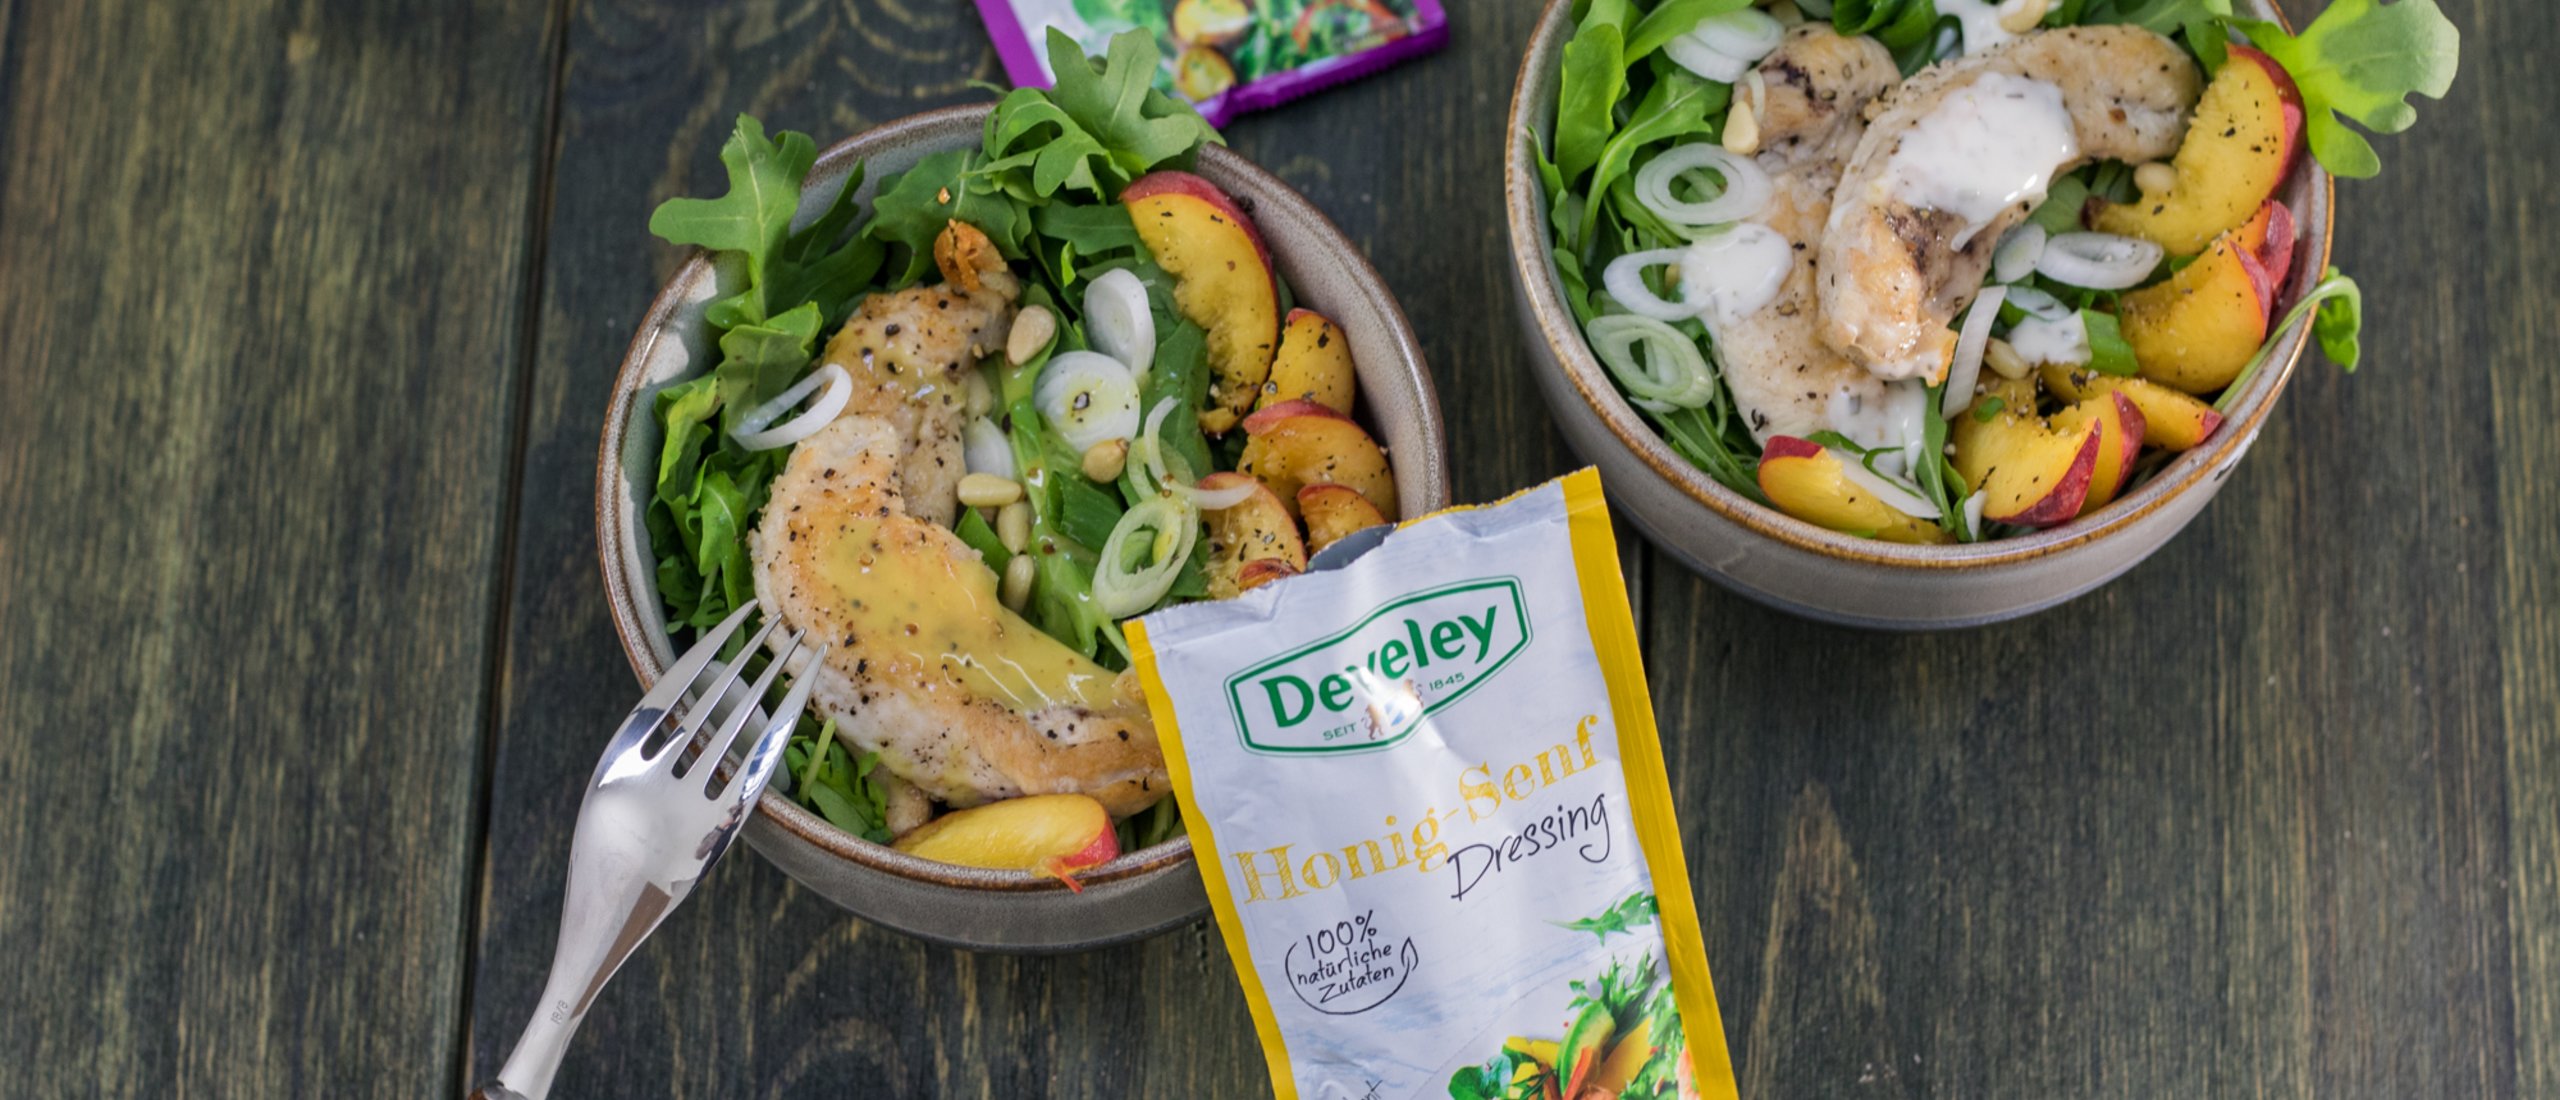 Rezept, Gericht von Develey: Rucola Pfirsich Salat mit Honig-Senf Dressing